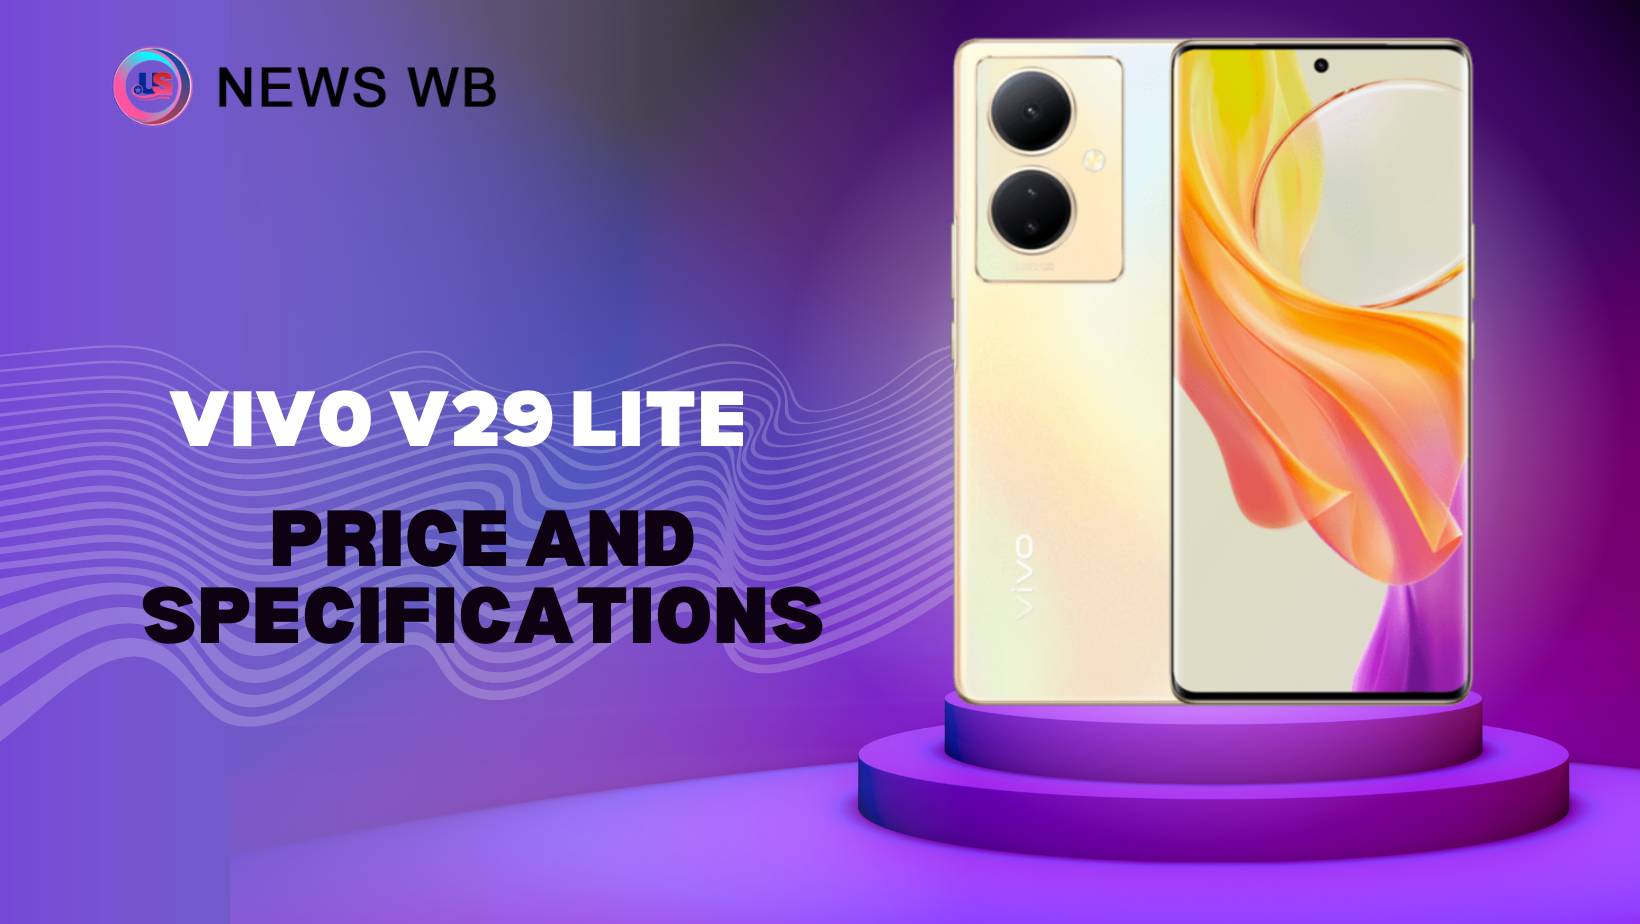 Vivo V29 Lite Price and Specifications